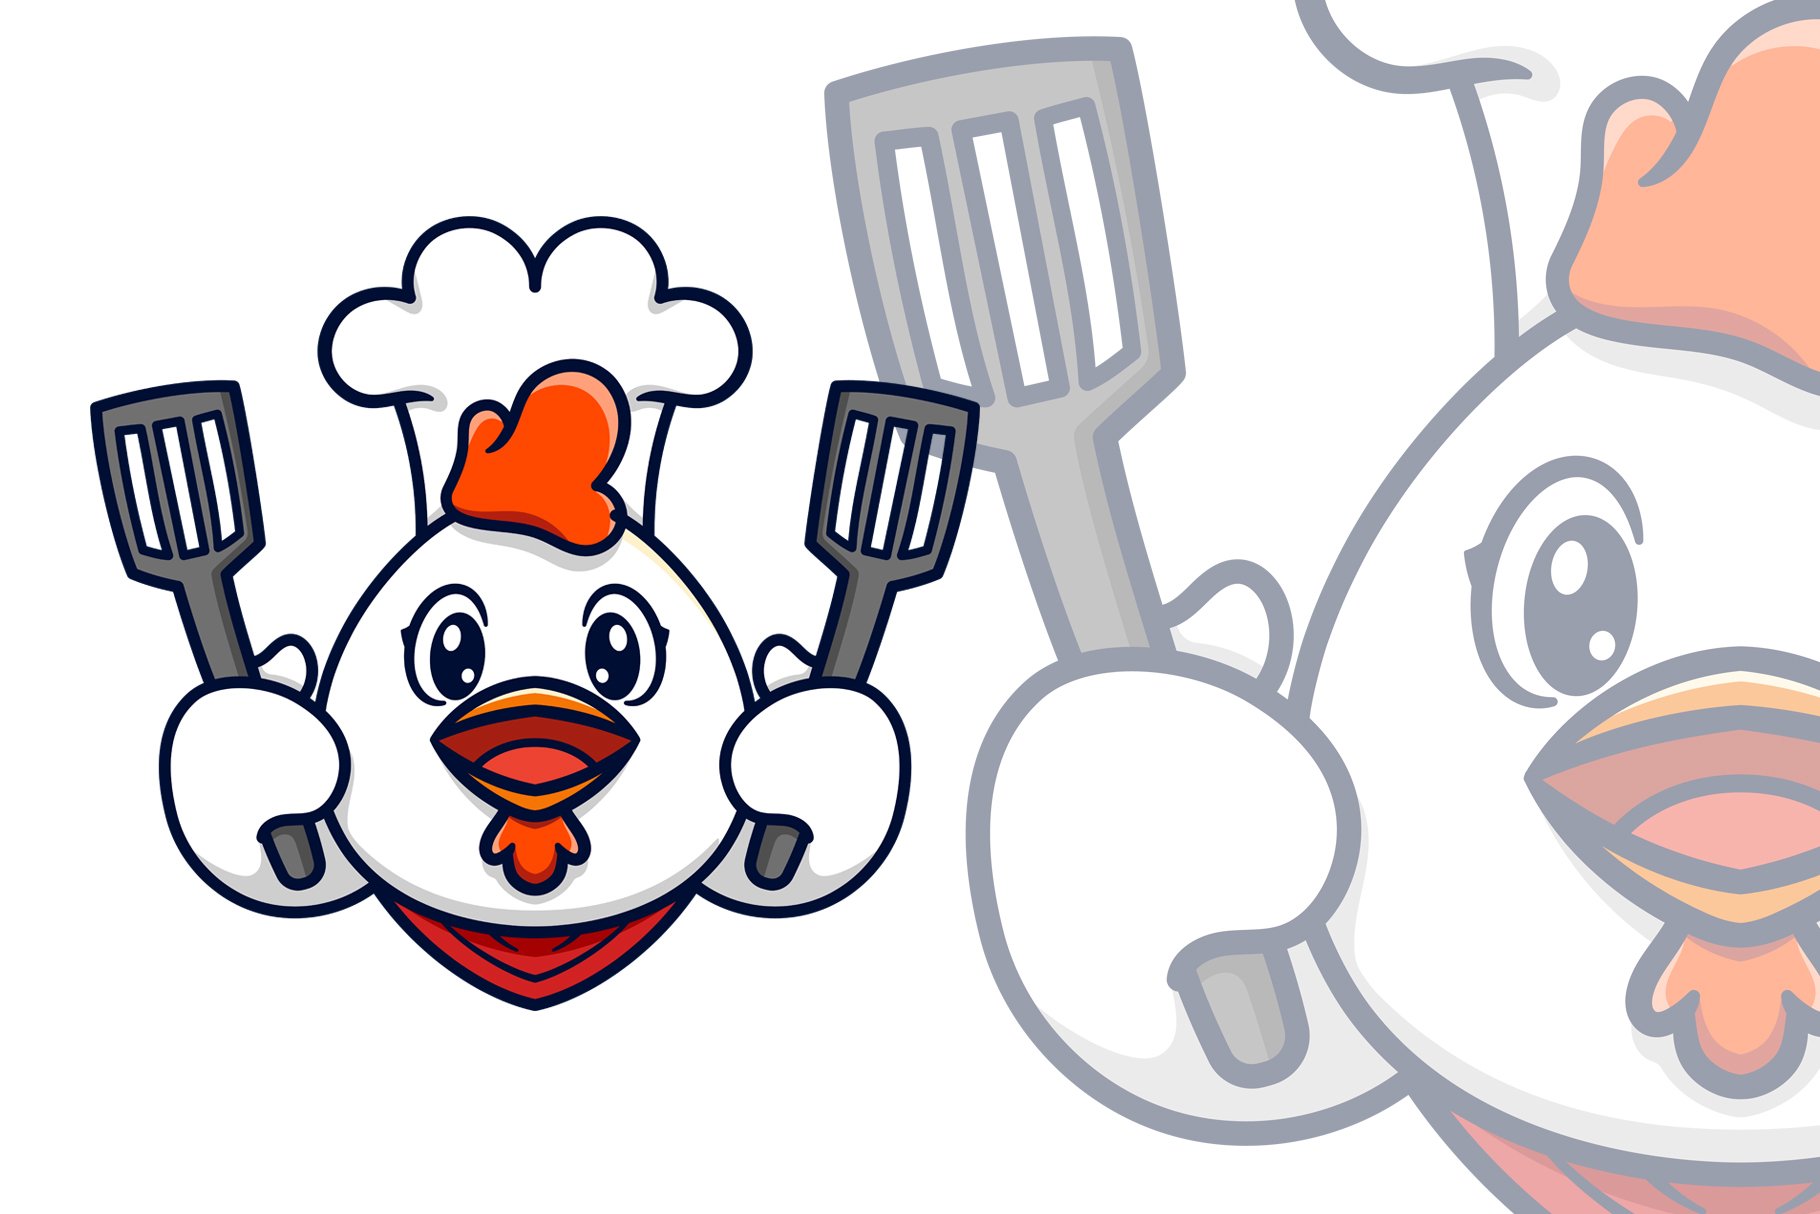 Chef Chicken Spatula Logo Mascot preview image.